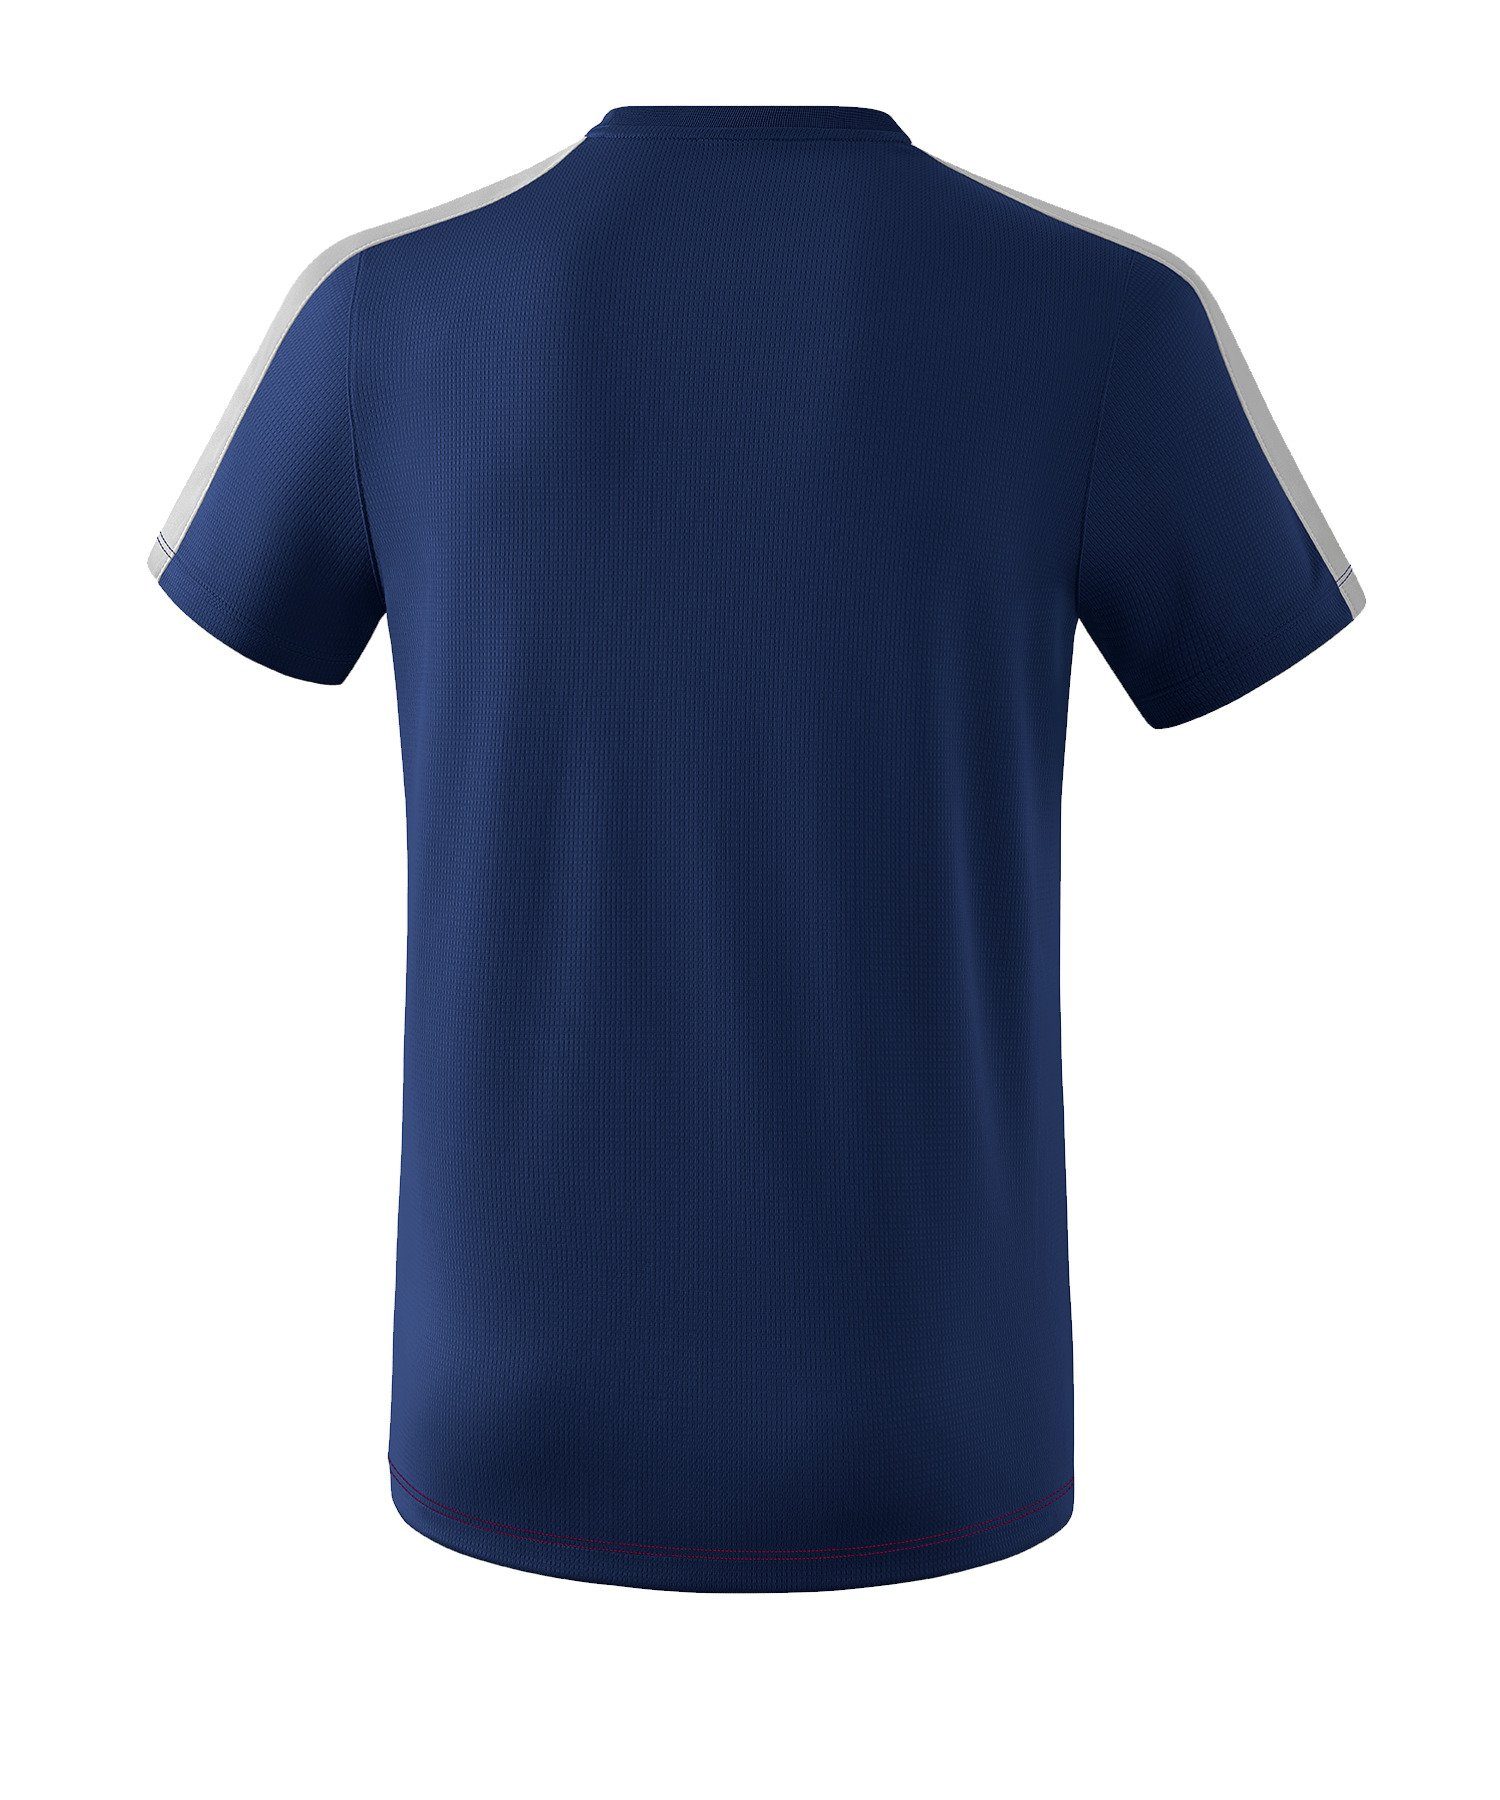 Erima default Squad T-Shirt blaurotgrau T-Shirt